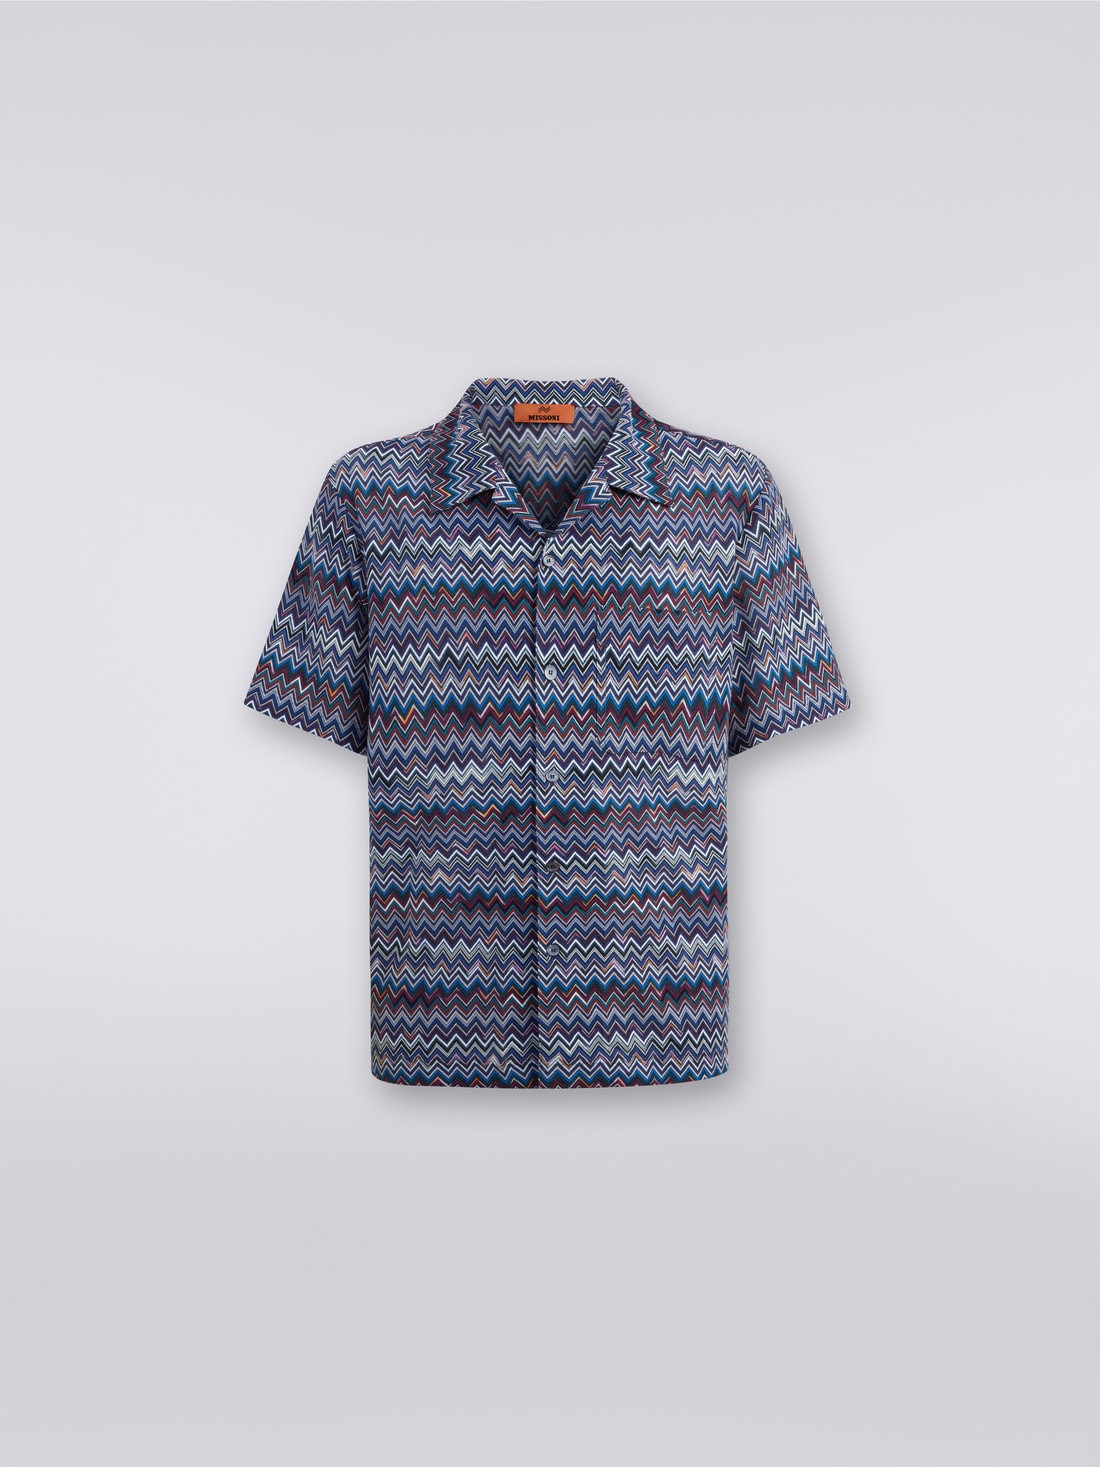 Camisa modelo bolos de manga corta de algodón y viscosa en zigzag, Azul Marino  - US23WJ08BR00OUSM8Y1 - 0